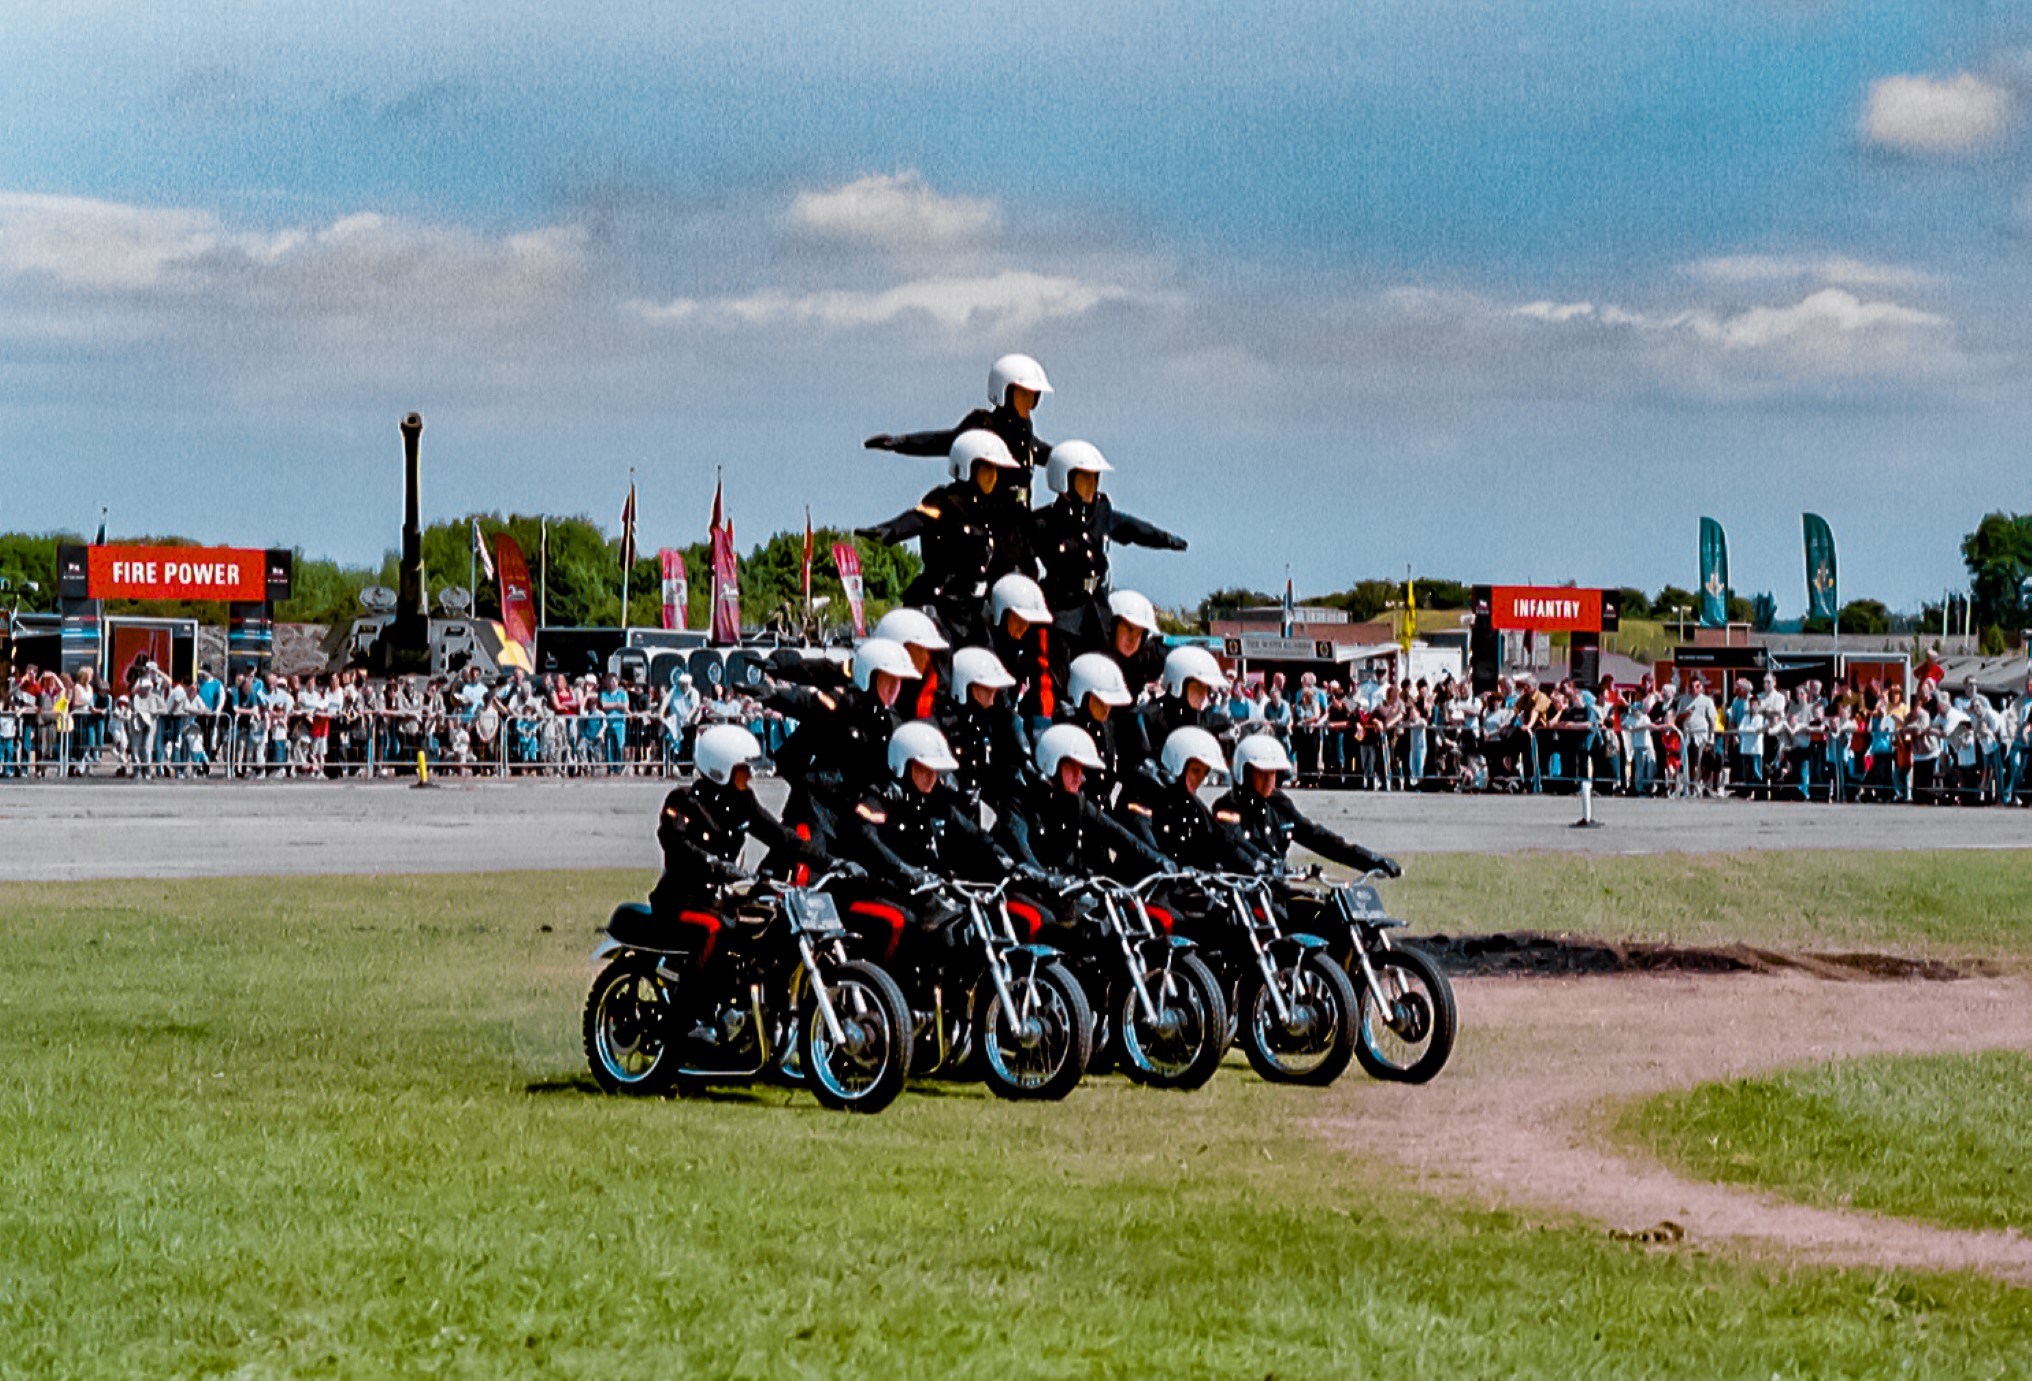 Royal Signals Motorcycle Display Team